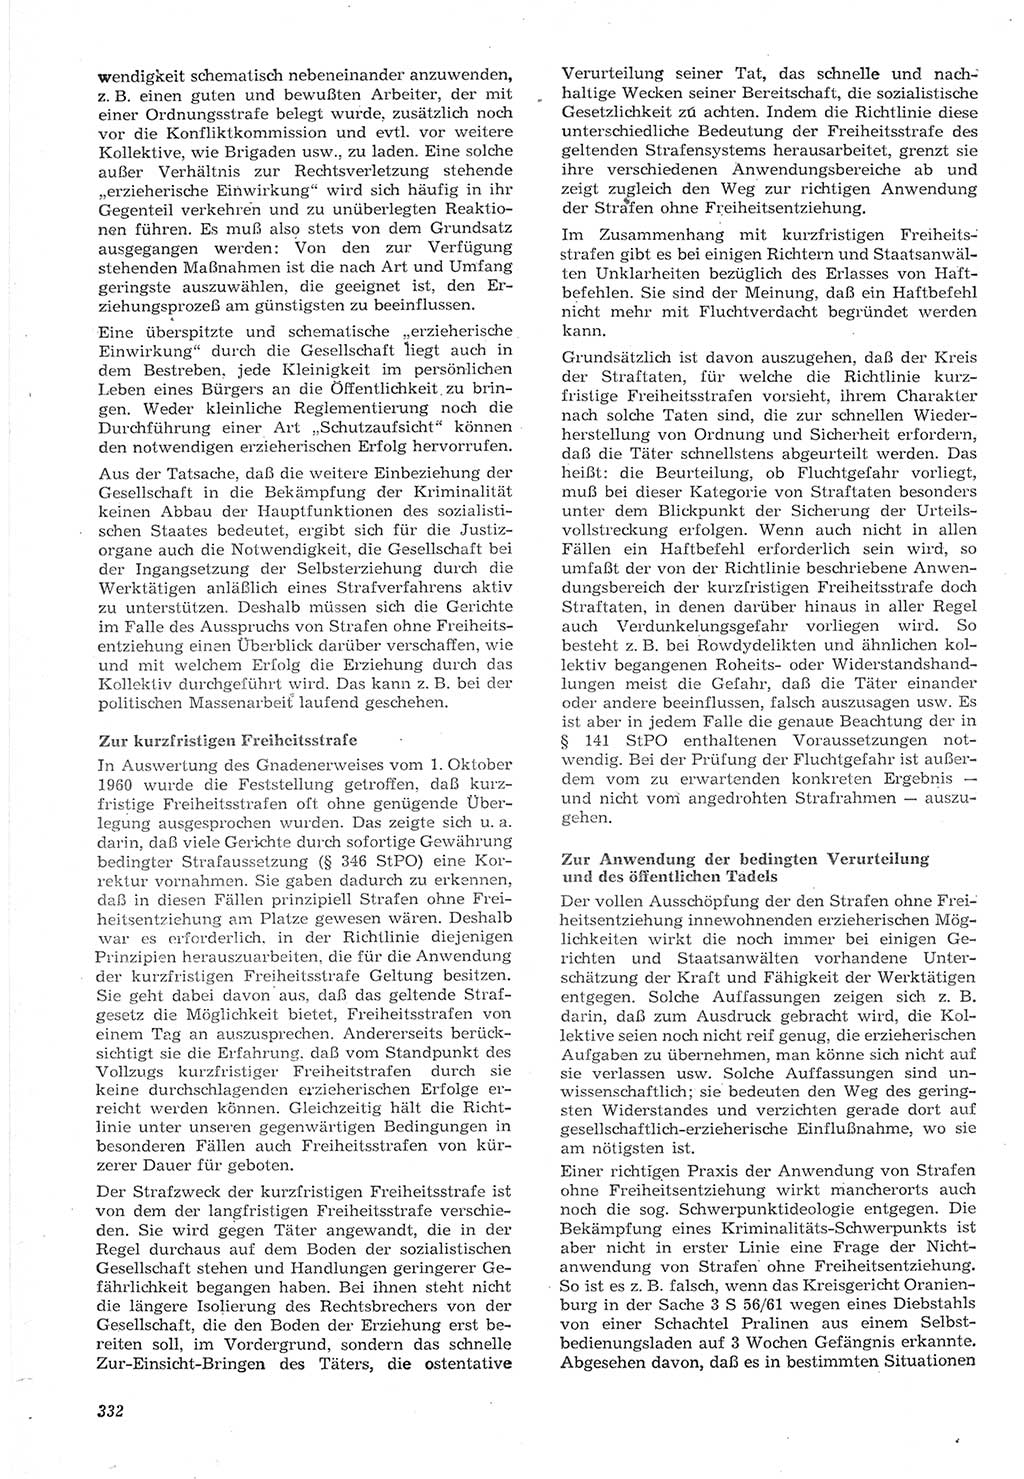 Neue Justiz (NJ), Zeitschrift für Recht und Rechtswissenschaft [Deutsche Demokratische Republik (DDR)], 15. Jahrgang 1961, Seite 332 (NJ DDR 1961, S. 332)